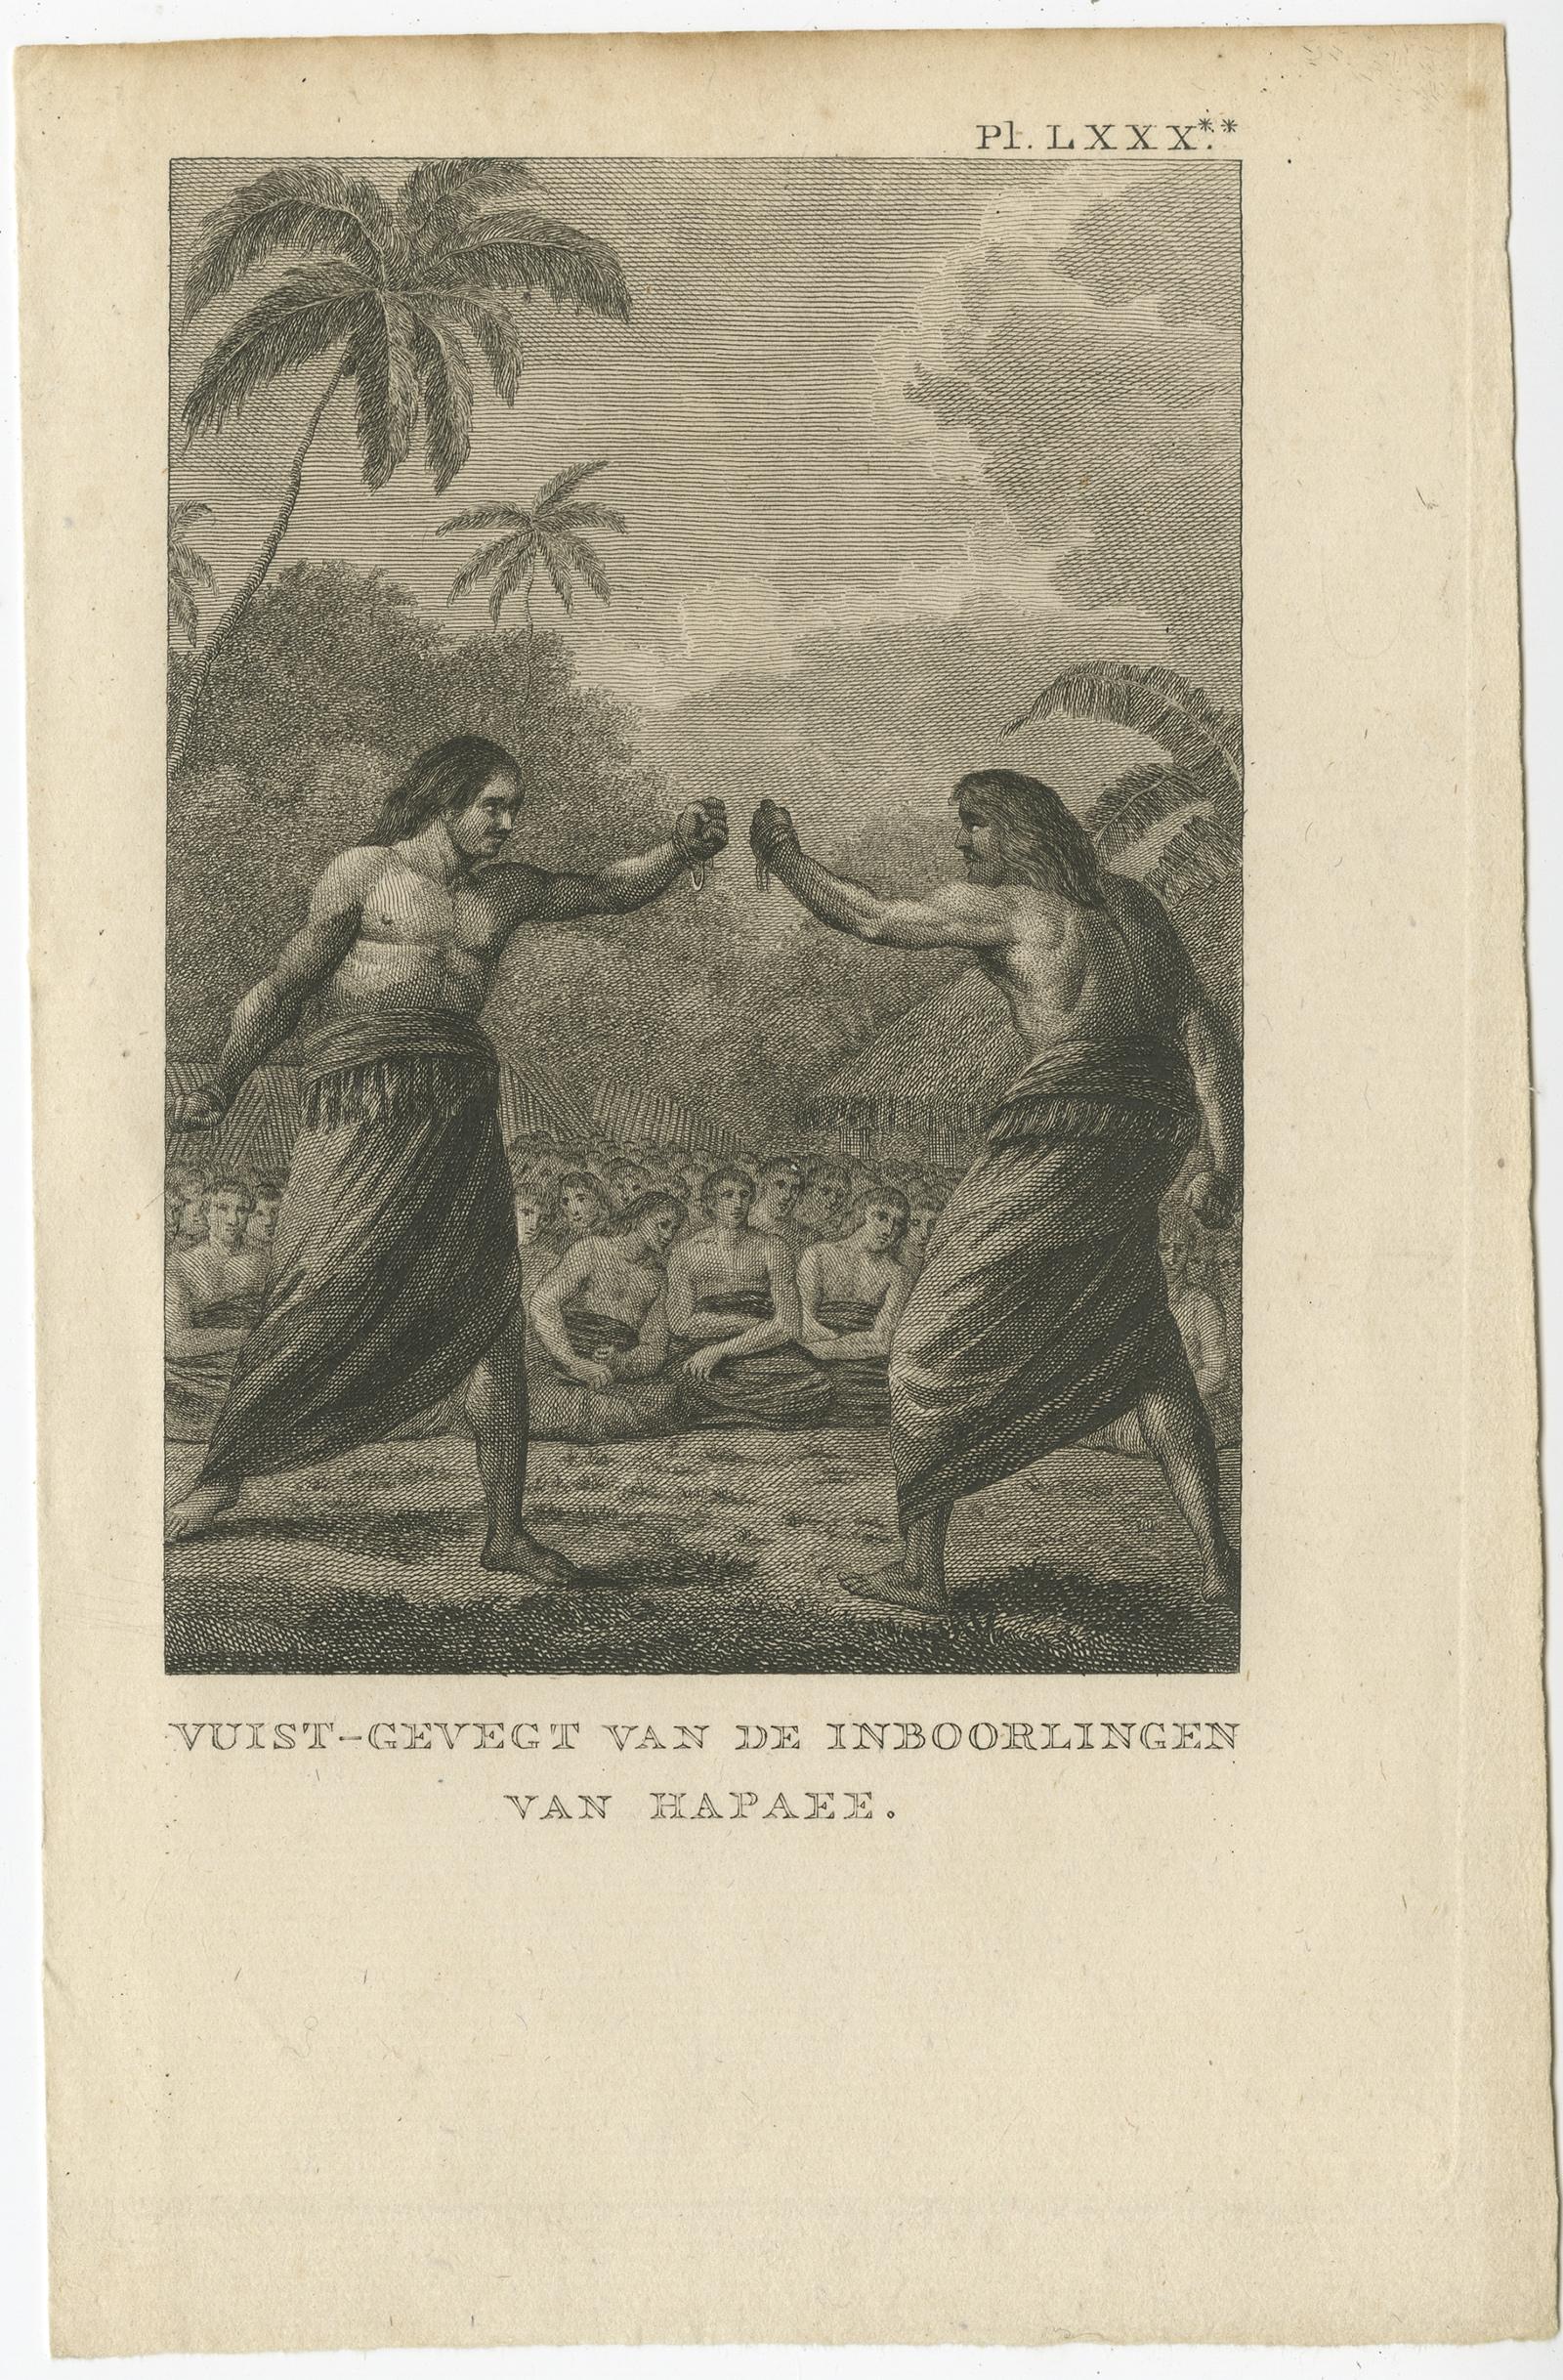 Antique print titled 'Vuist-Gevegt van de Inboorlingen van Hapaee'. 

Antique print depicting a fight between two natives of Hapaee. Originates from 'Reizen Rondom de Waereld door James Cook (..)'. 

Ha'apai is one of the islands of Tonga, where